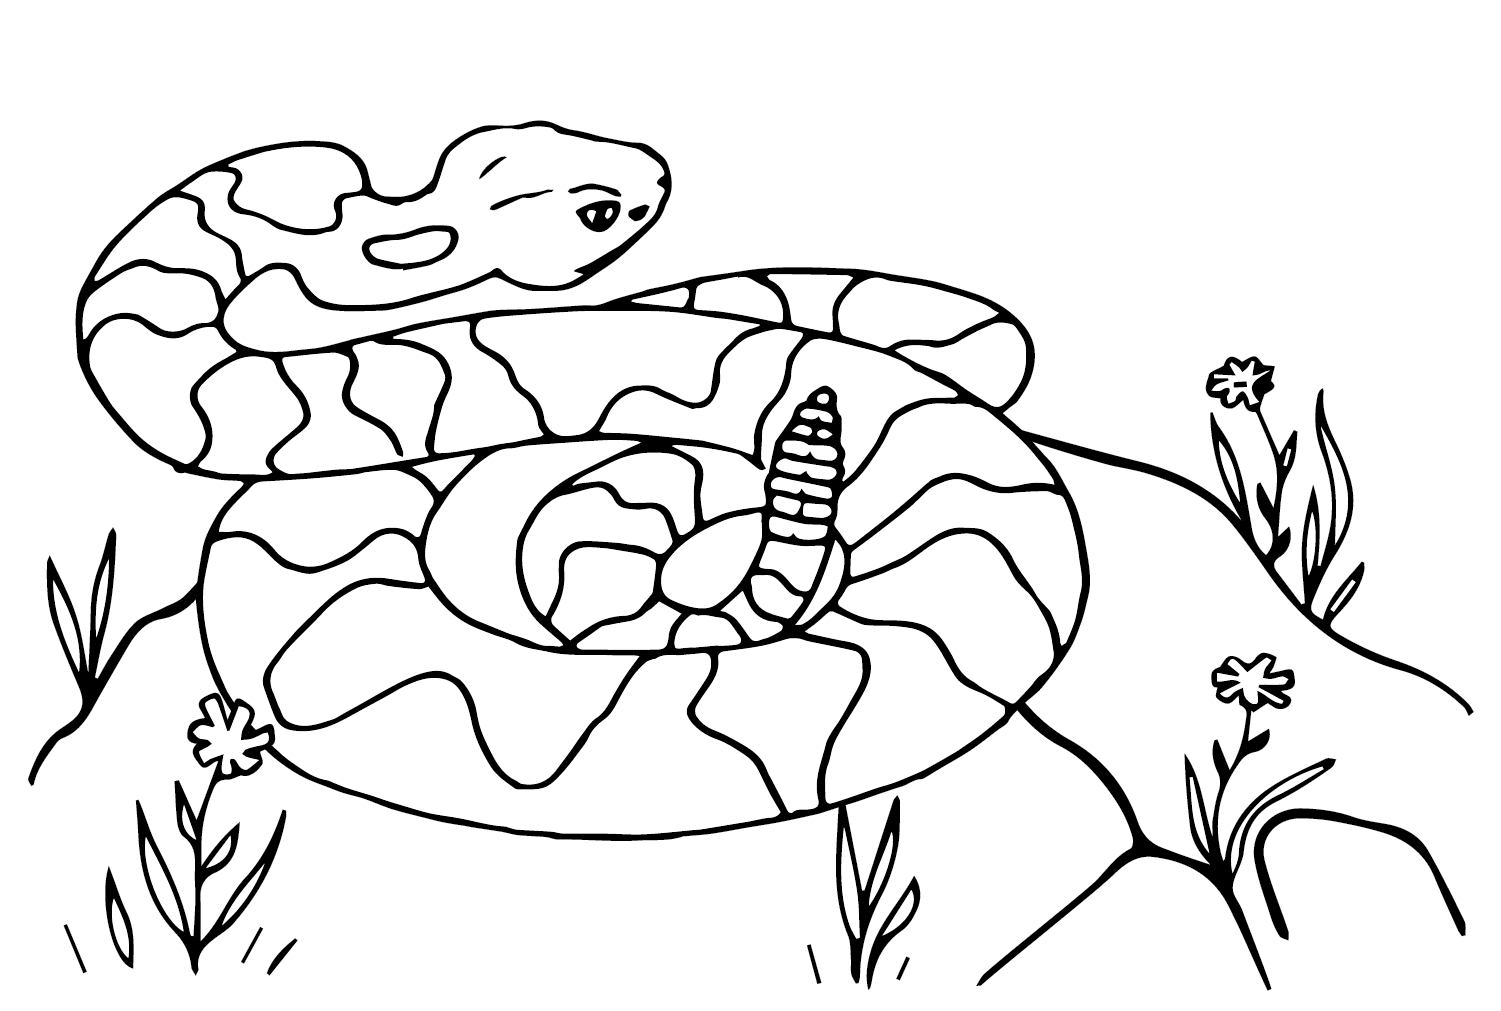 Rattlesnake Coloring Sheet for Kids from Rattlesnake